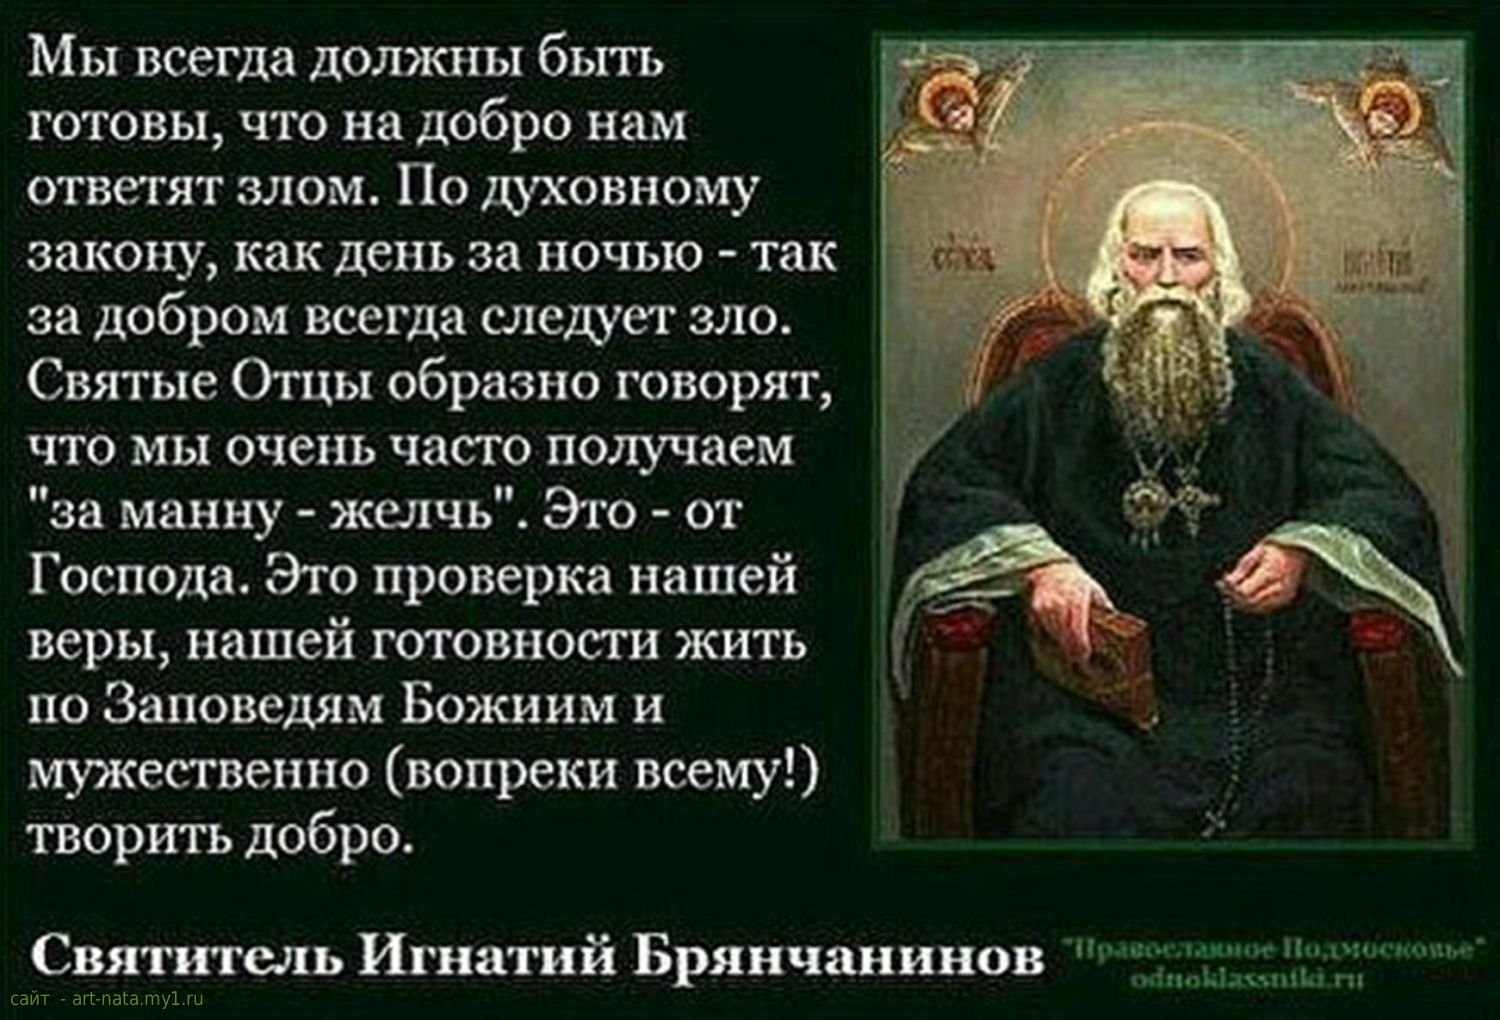 Всегда должно быть обращено. Изречения святых отцов Игнатия Брянчанинова. Цитаты православных святых.